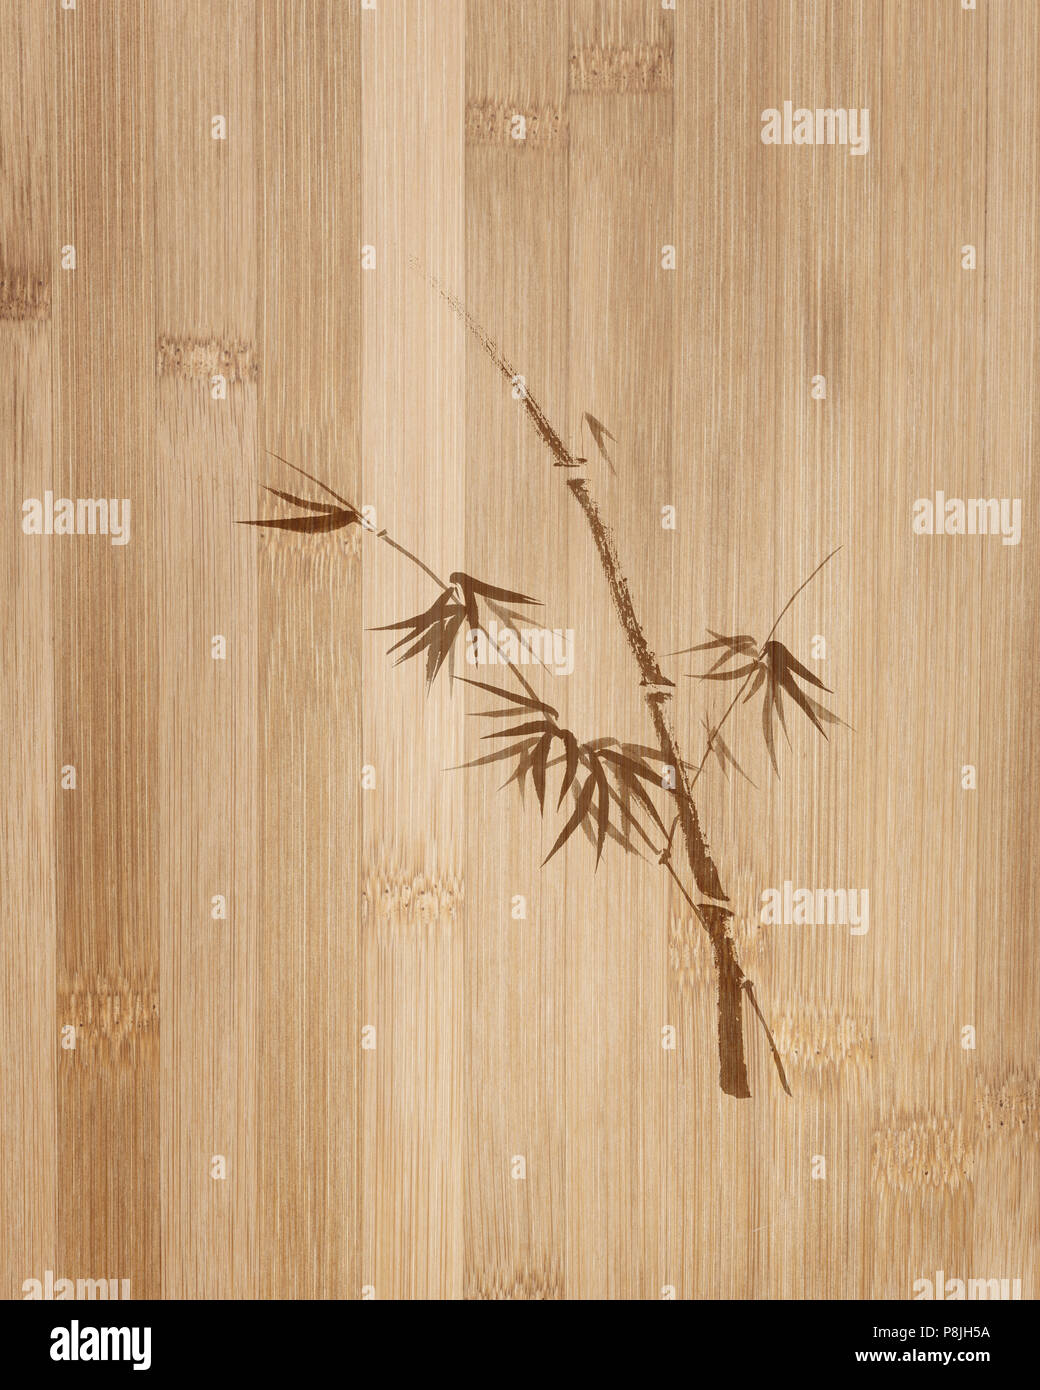 Lizenz auf MaximImages.com filigranes Design eines Bambusstiels mit jungen Blättern. Orientalisches Zen-Kunstwerk auf hölzernem Bambusfaserhintergrund. Stockfoto